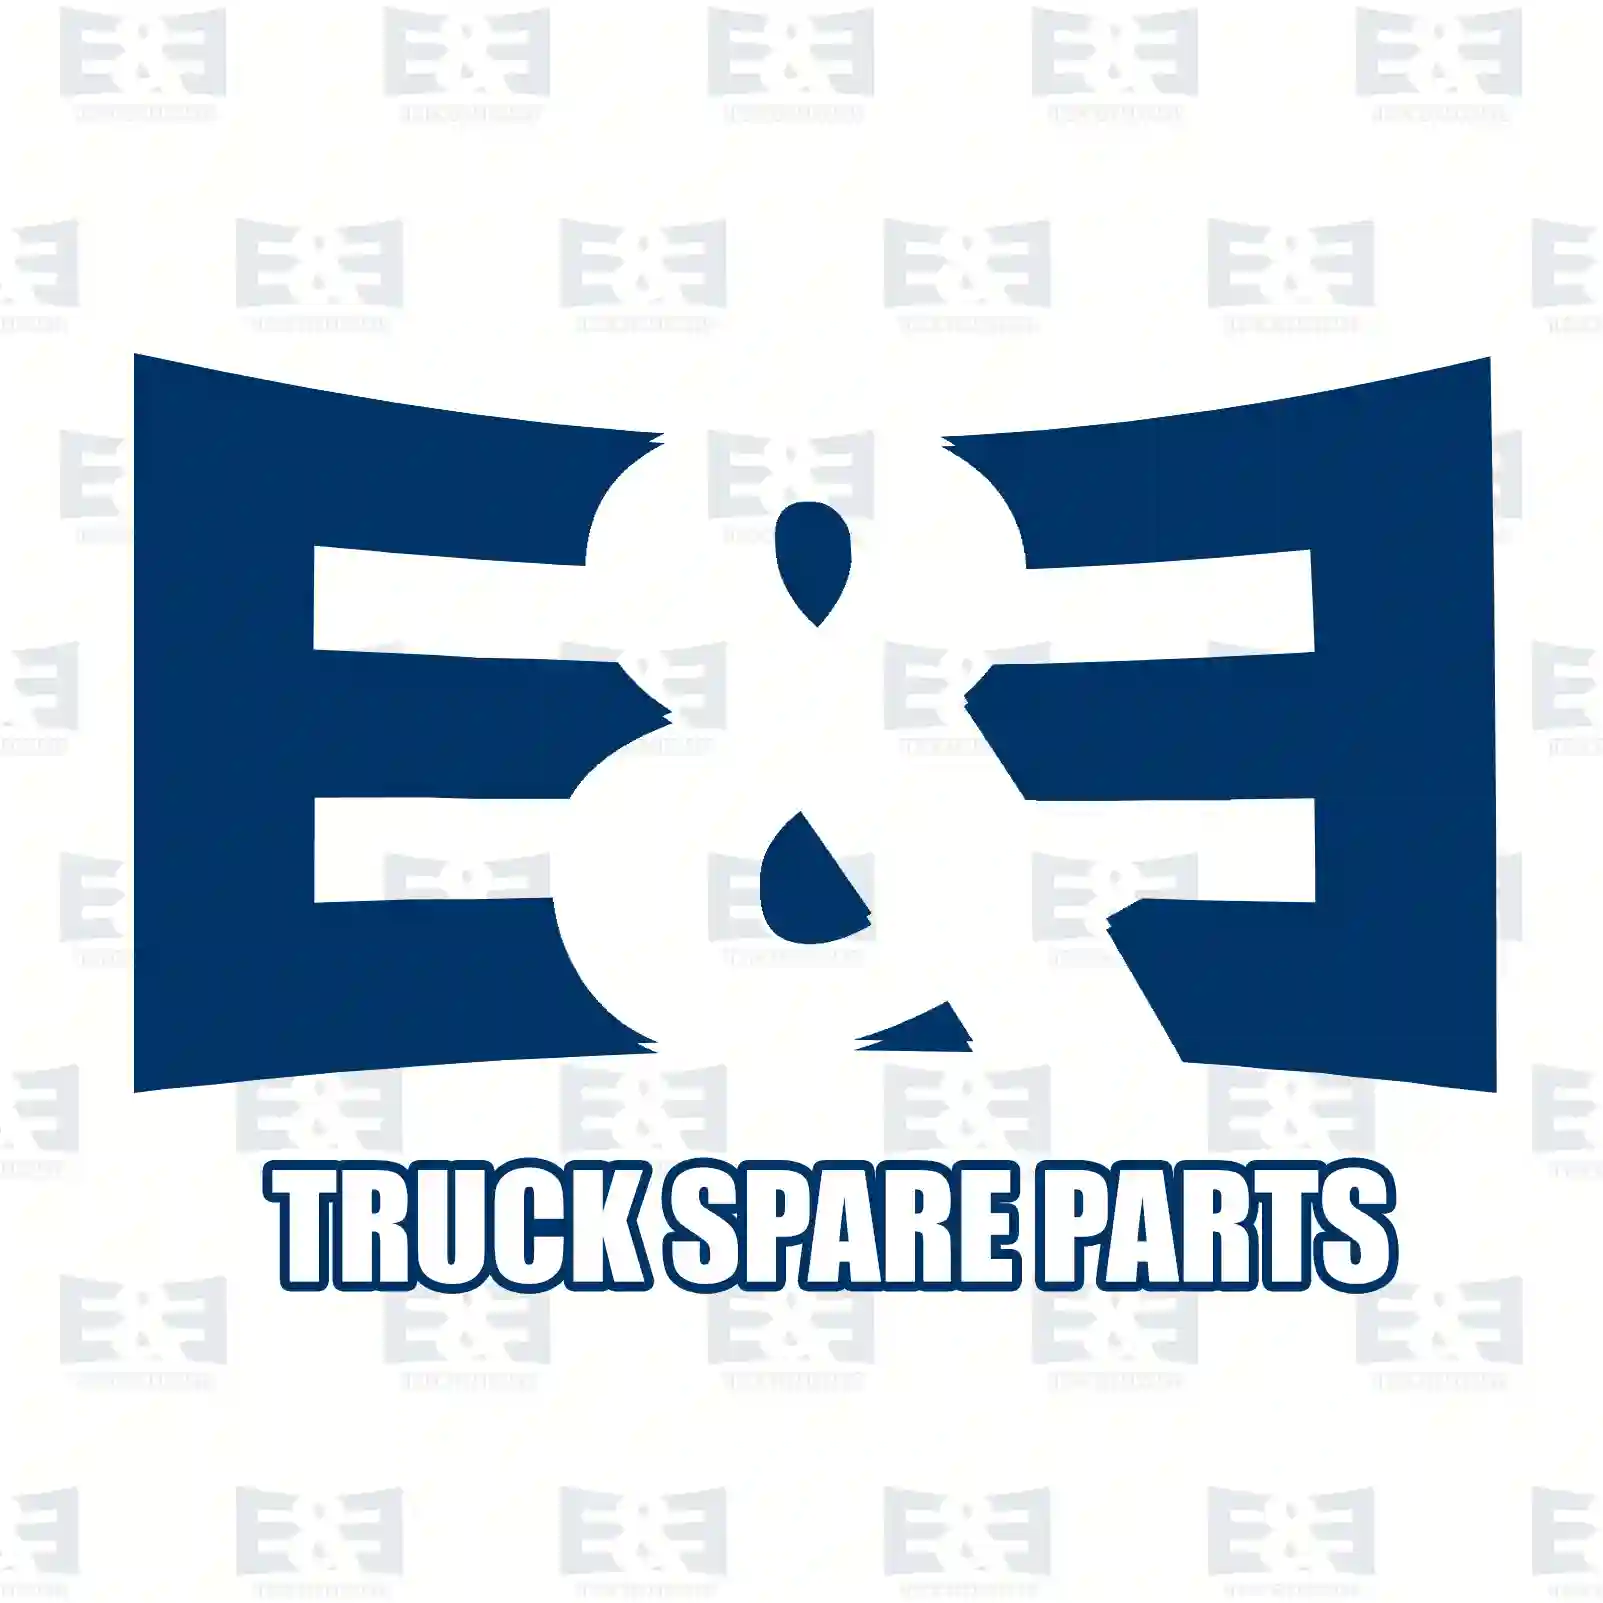 Drum brake lining kit, axle kit, 2E2293509, MBLK1150, 3090044, 3090044S, 30900443 ||  2E2293509 E&E Truck Spare Parts | Truck Spare Parts, Auotomotive Spare Parts Drum brake lining kit, axle kit, 2E2293509, MBLK1150, 3090044, 3090044S, 30900443 ||  2E2293509 E&E Truck Spare Parts | Truck Spare Parts, Auotomotive Spare Parts